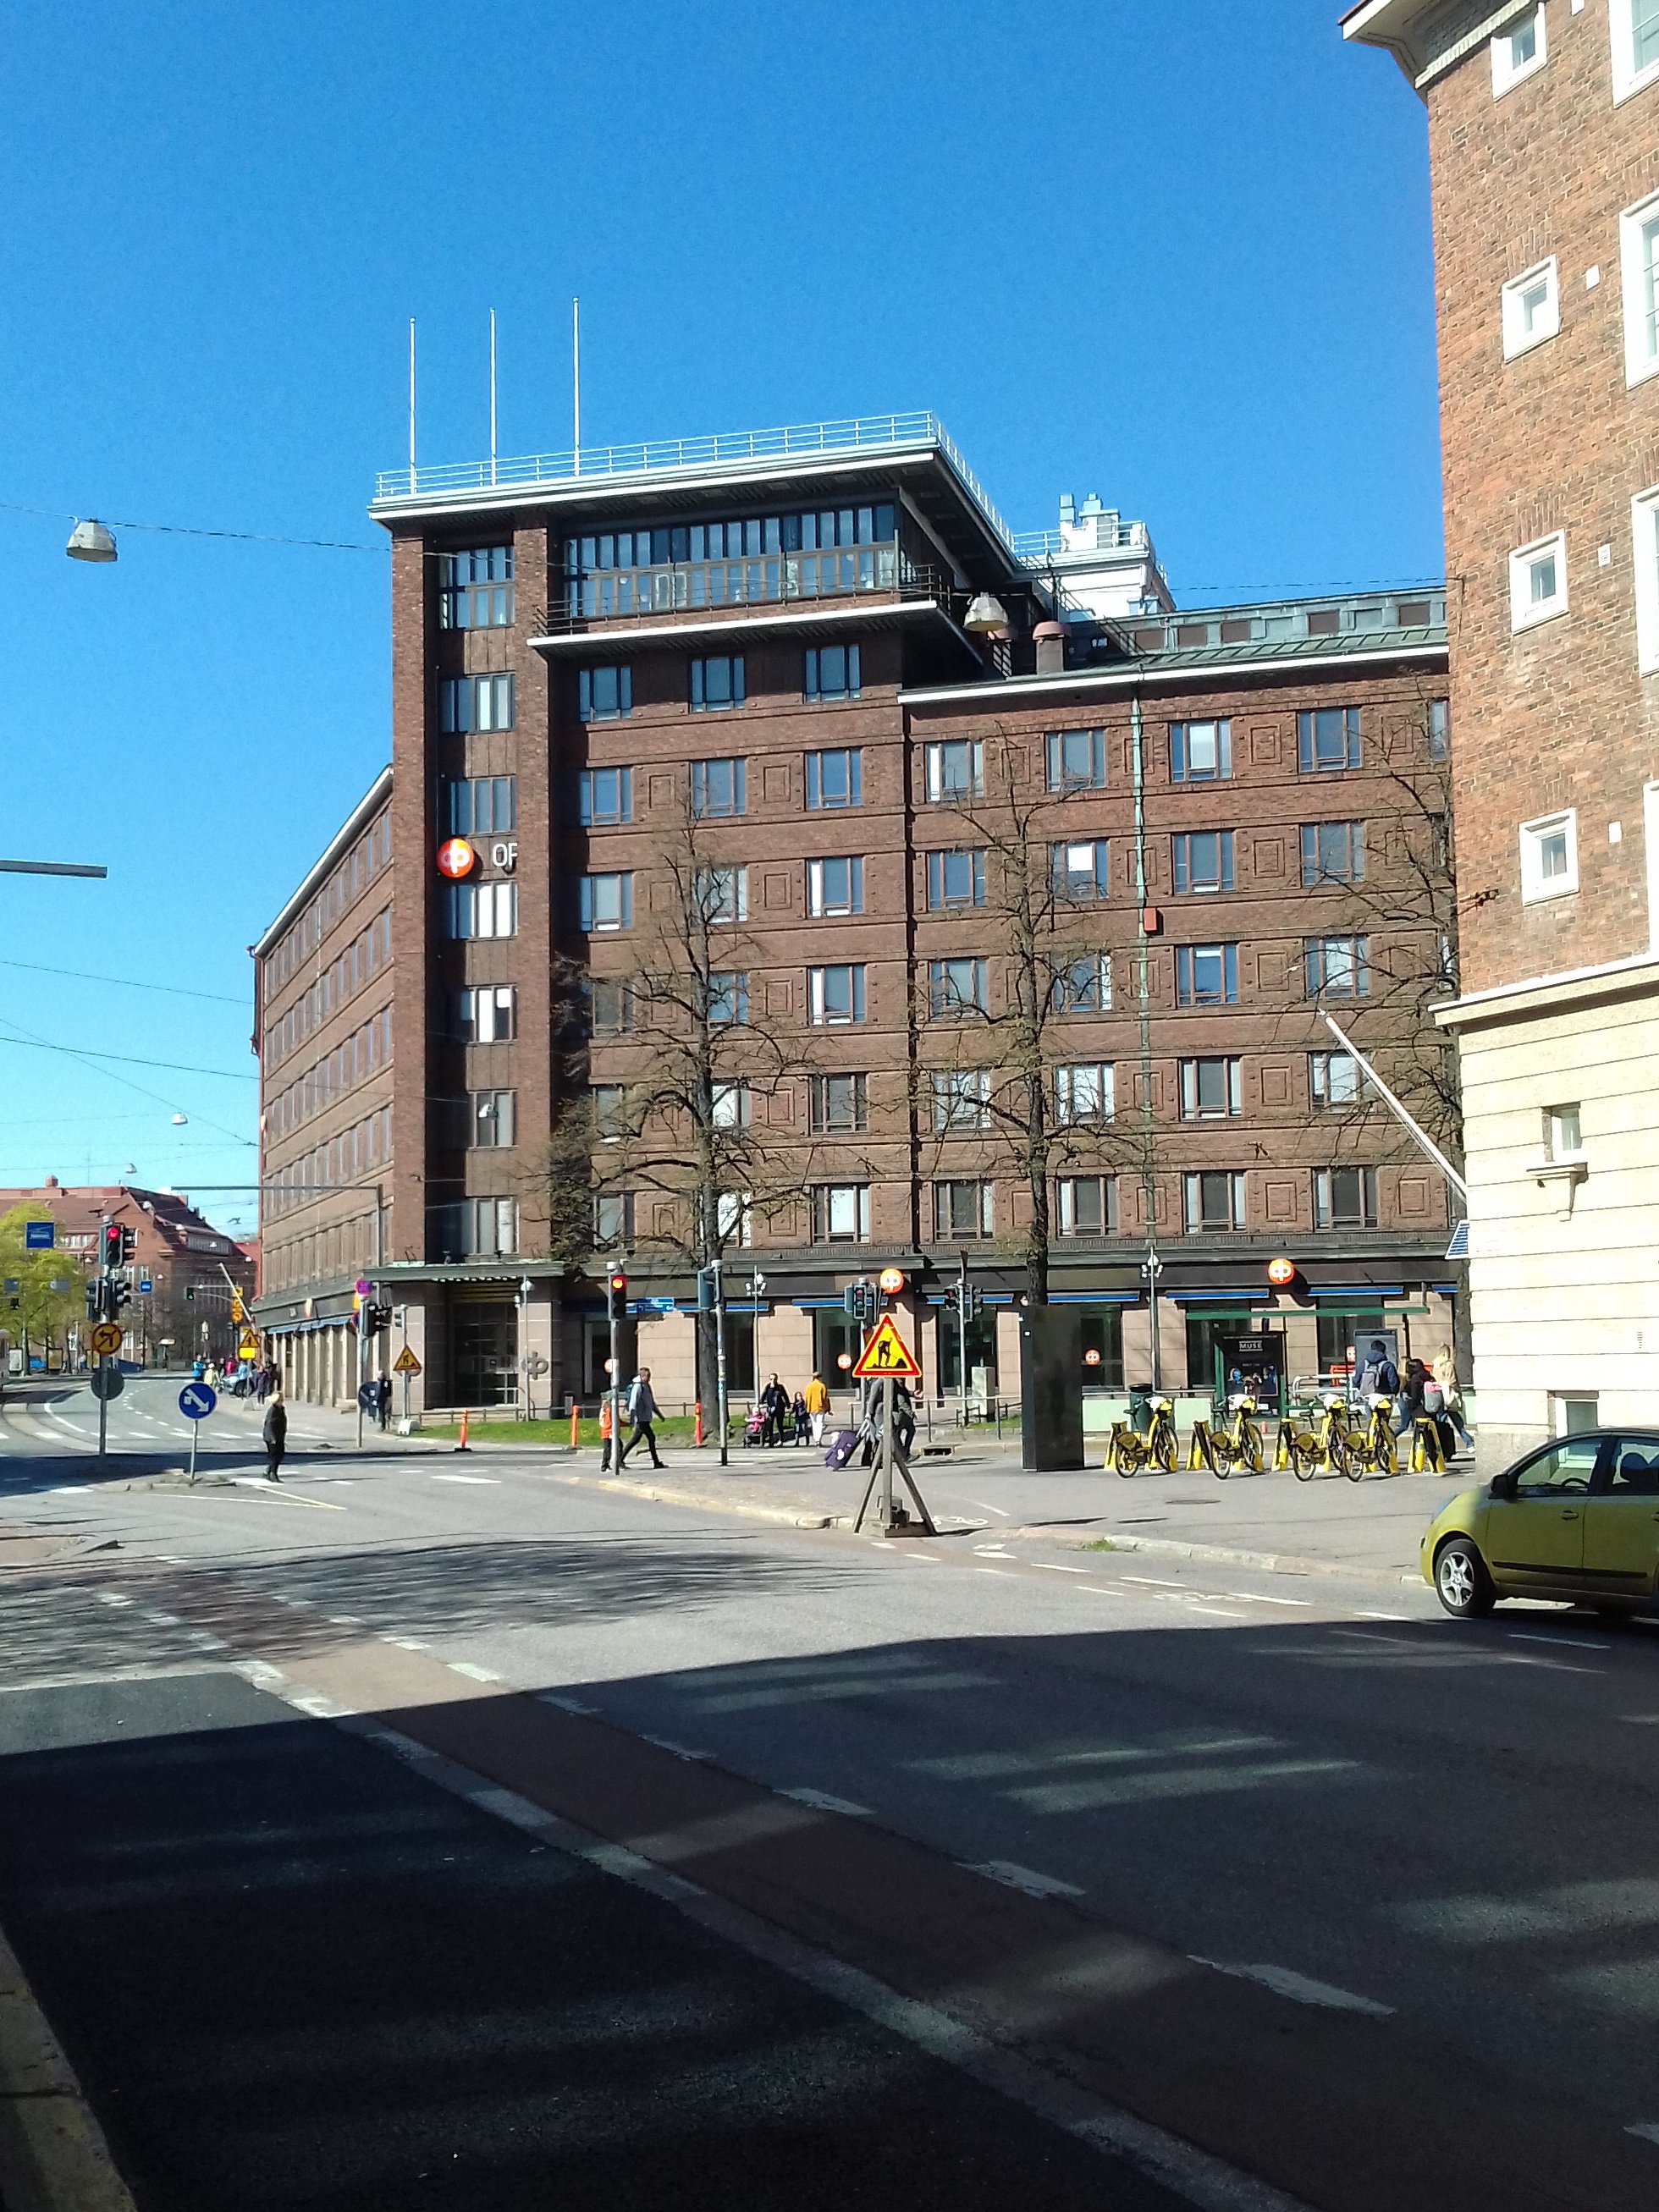 Näkymä Runeberginkadun ja Arkadiankadun risteyksestä pohjoiseen. Kuvan keskellä Osuuskassojen Keskusliiton rakennus, Arkadiankatu 23. Kadulla HKL:n johdinauto numero 604 linjalla 14, henkilöautoja ja takseja. Kuvan vasemmassa laidassa erottuu Tyttönormaalilyseon rakennus, Runeberginkatu 22-24. rephoto